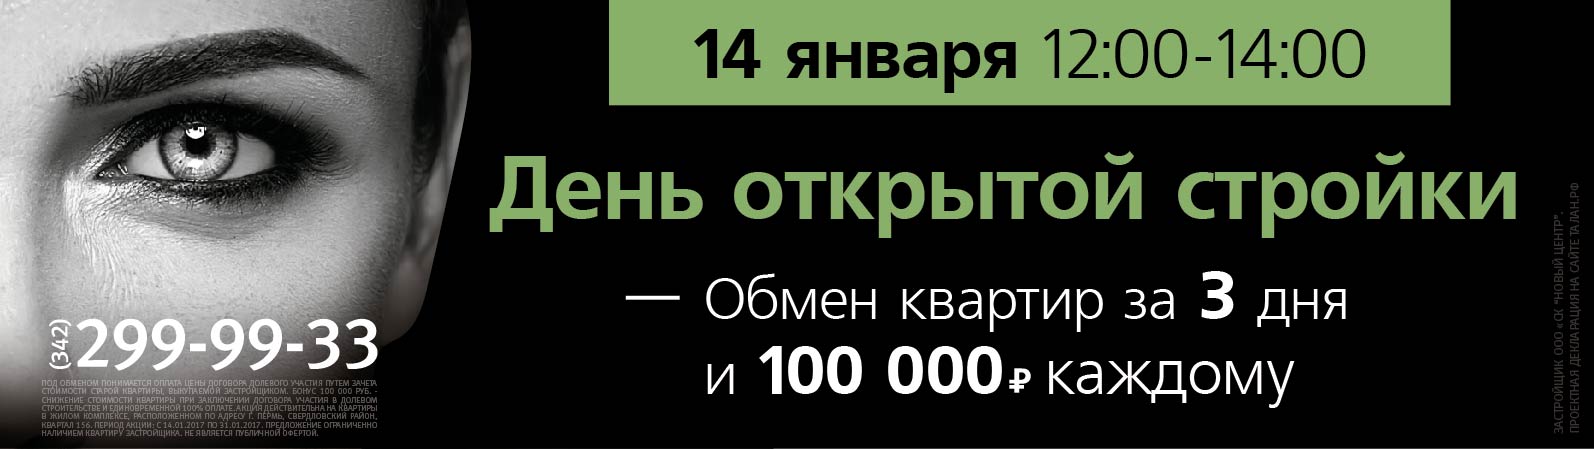 Экспресс-обмен квартиры на новостройку и сто тысяч рублей каждому!